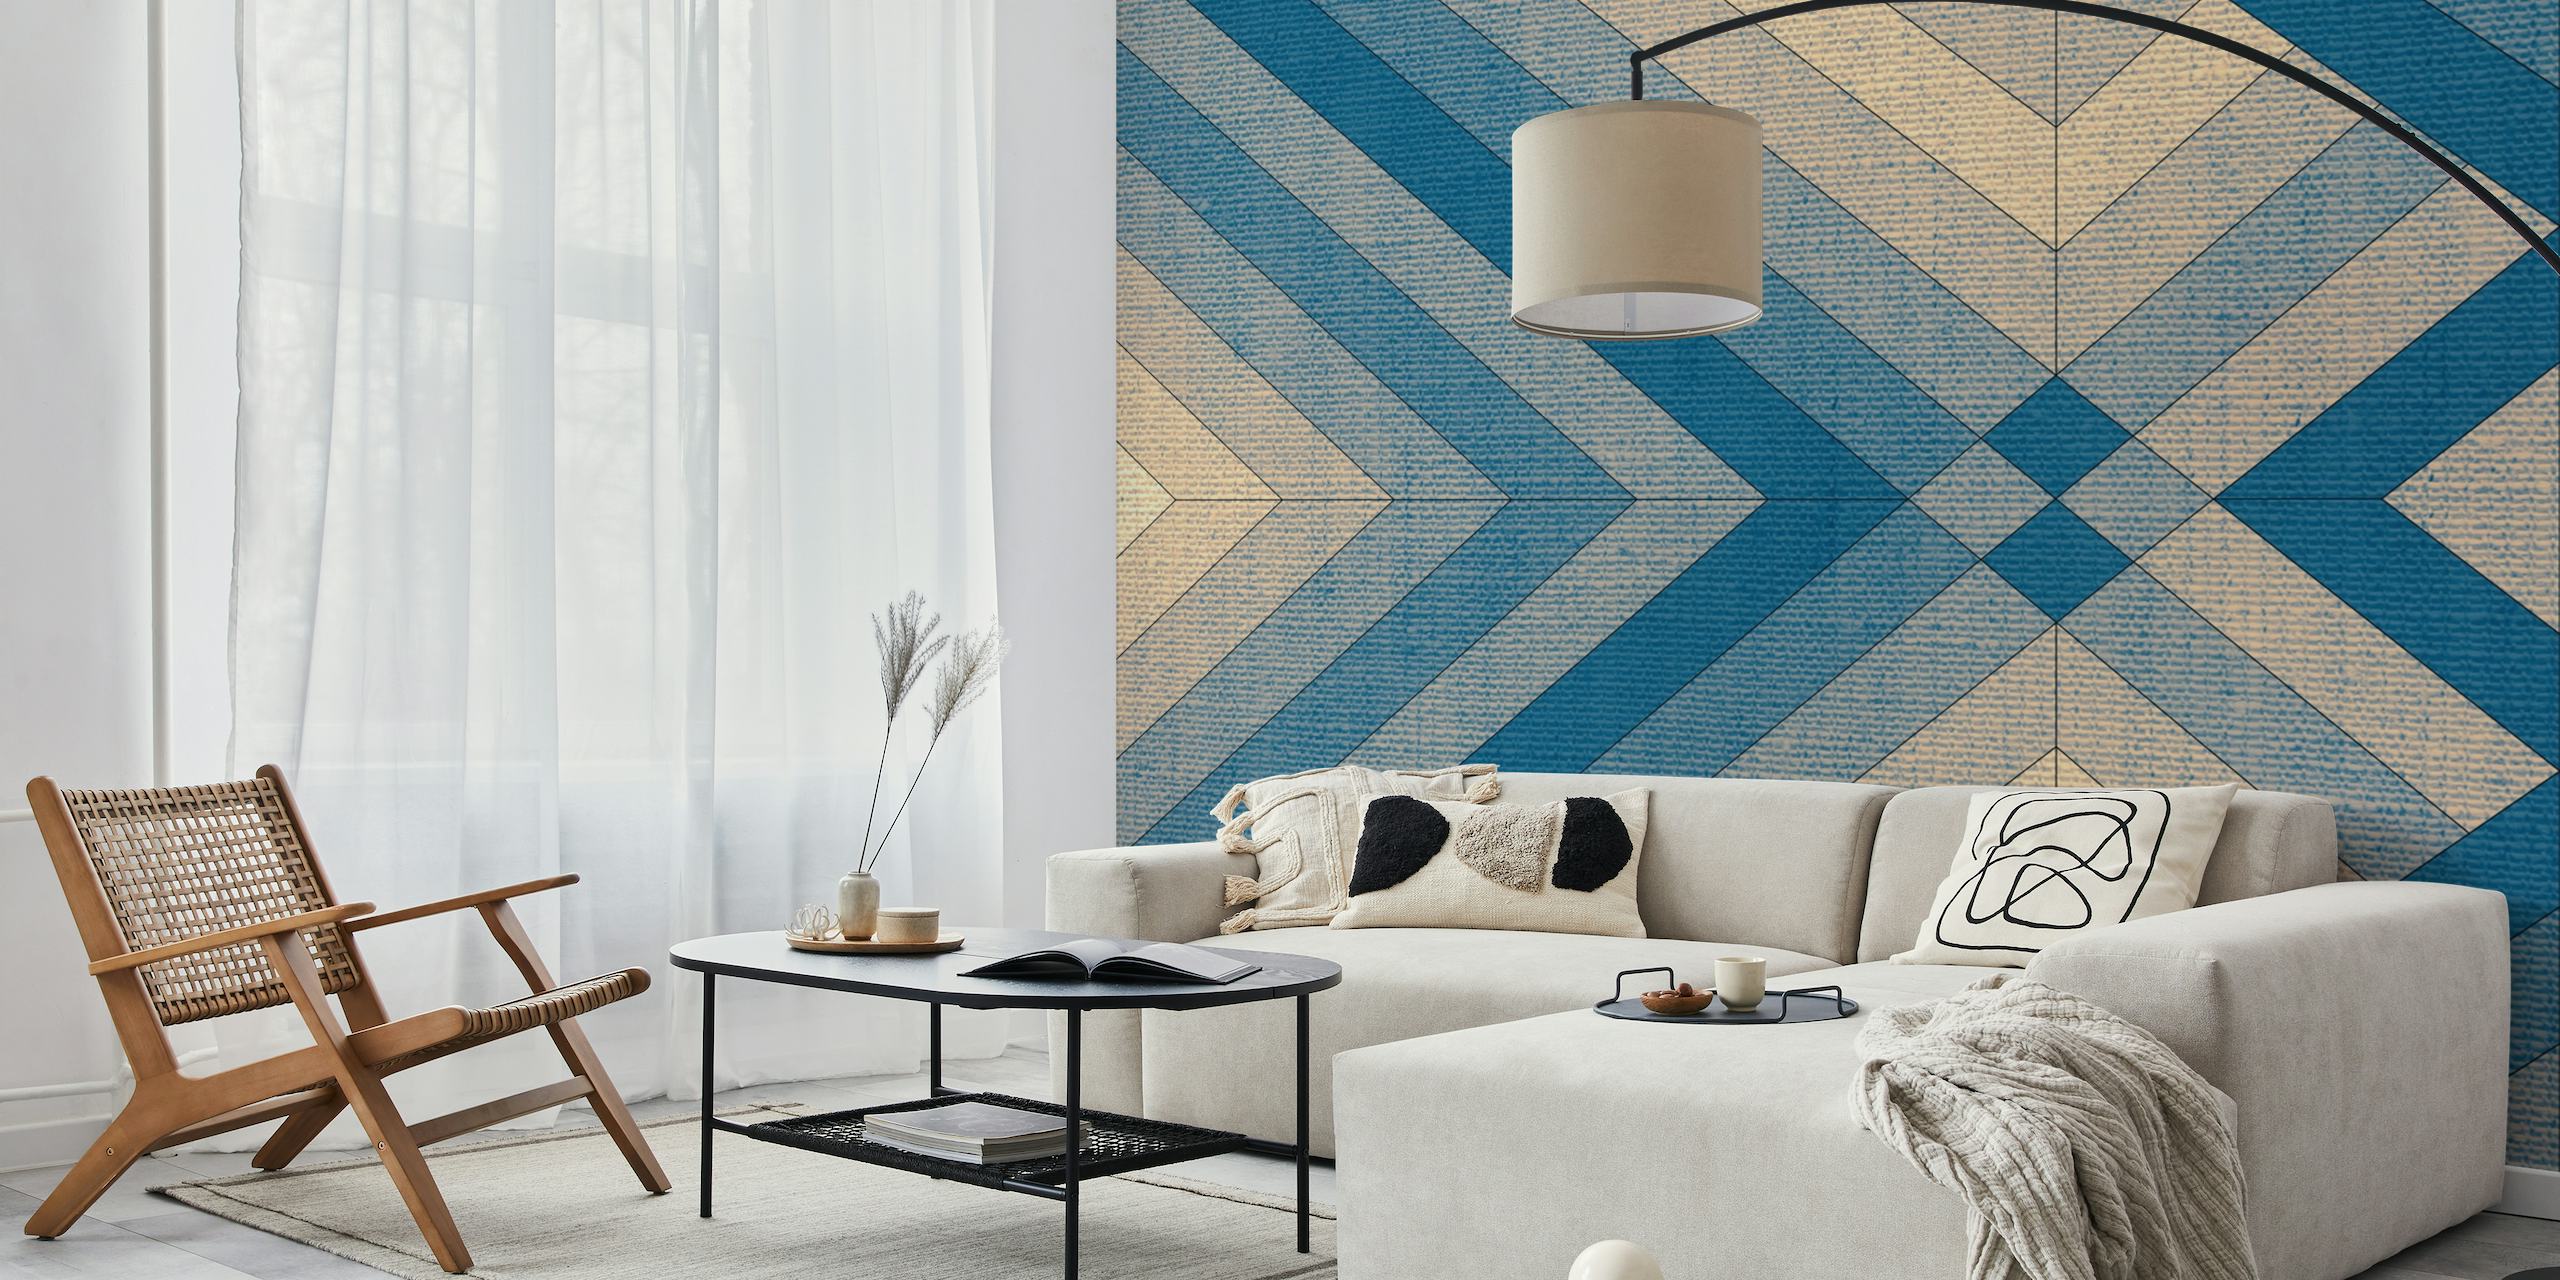 Mural de parede com padrão geométrico e textura semelhante a tecido em tons de azul e bege